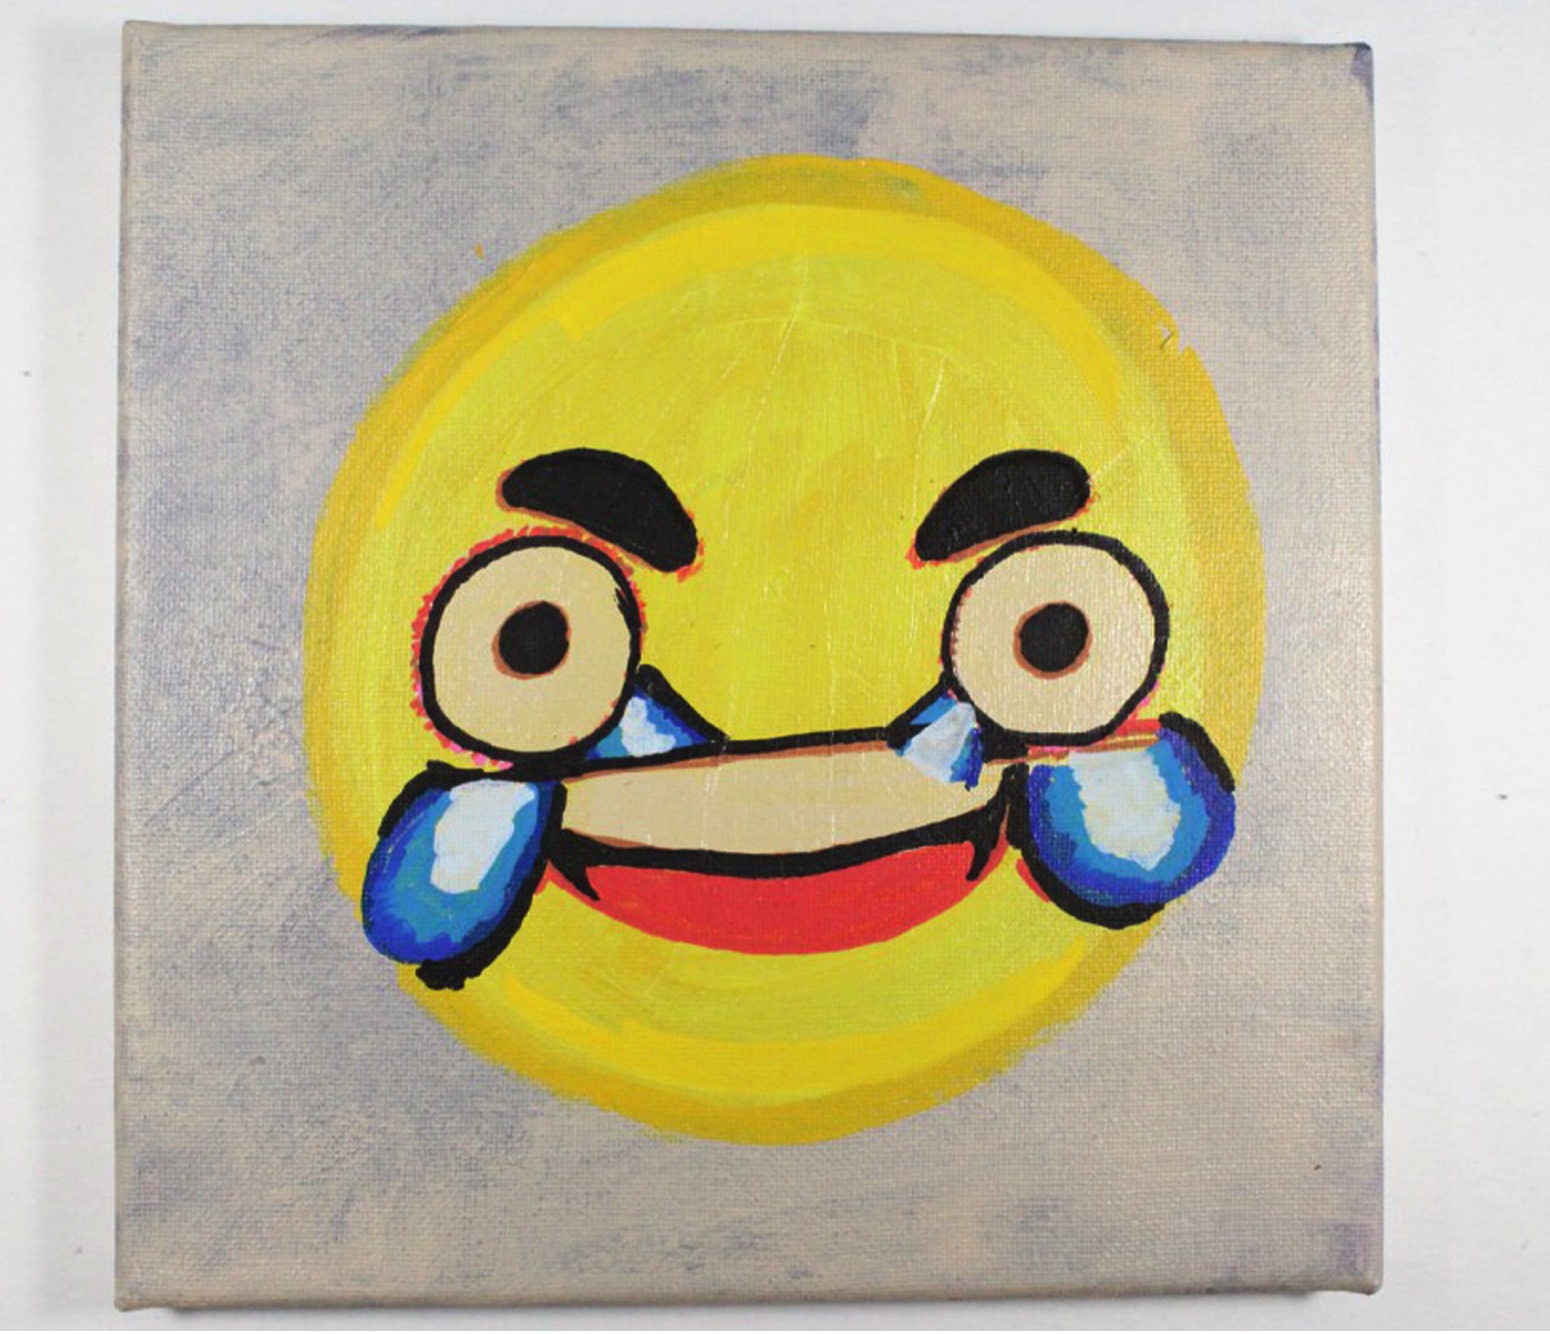 Cursed Emoji Paintings